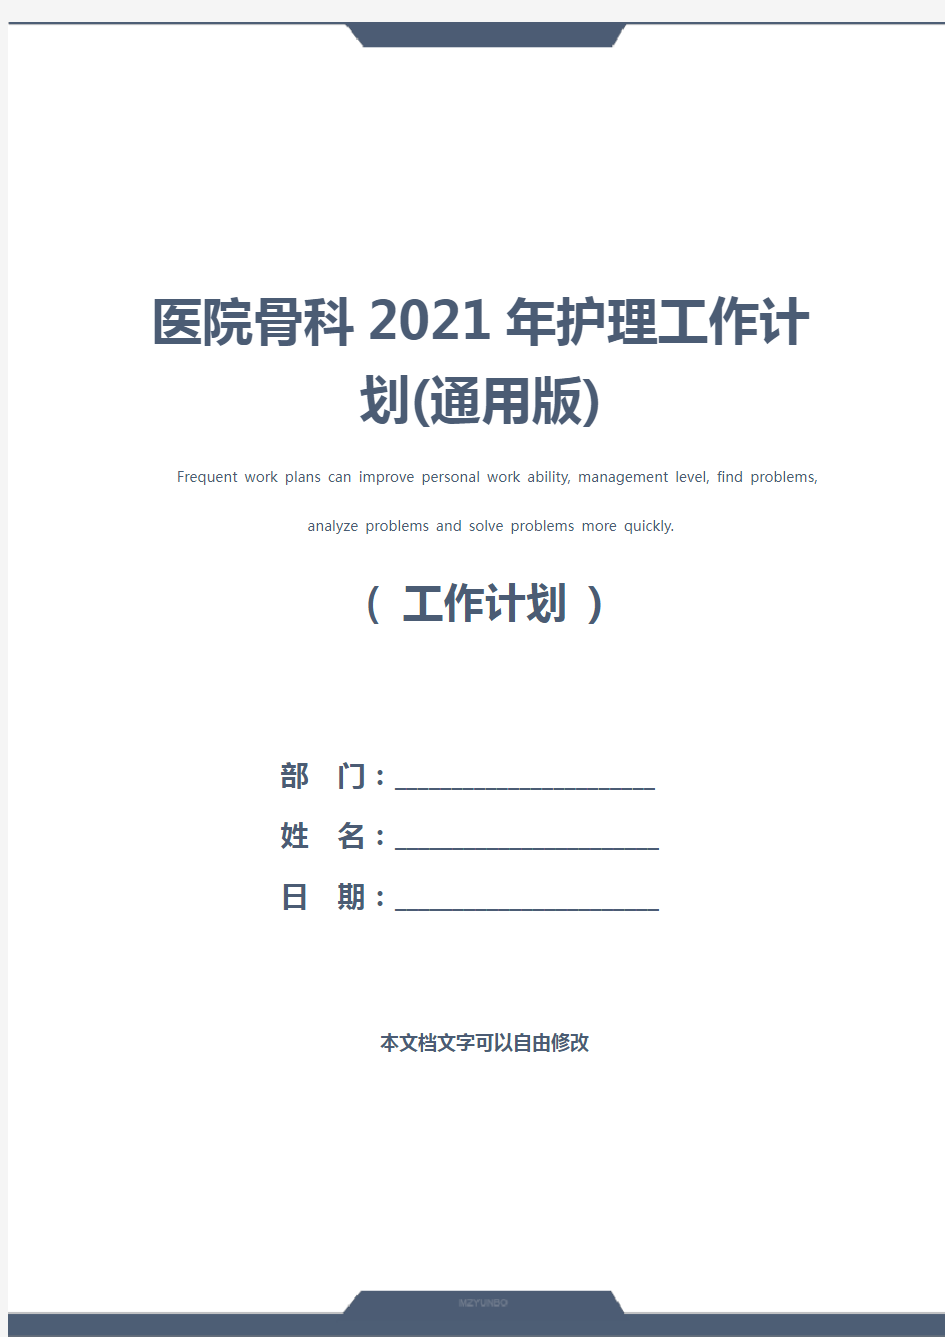 医院骨科2021年护理工作计划(通用版)